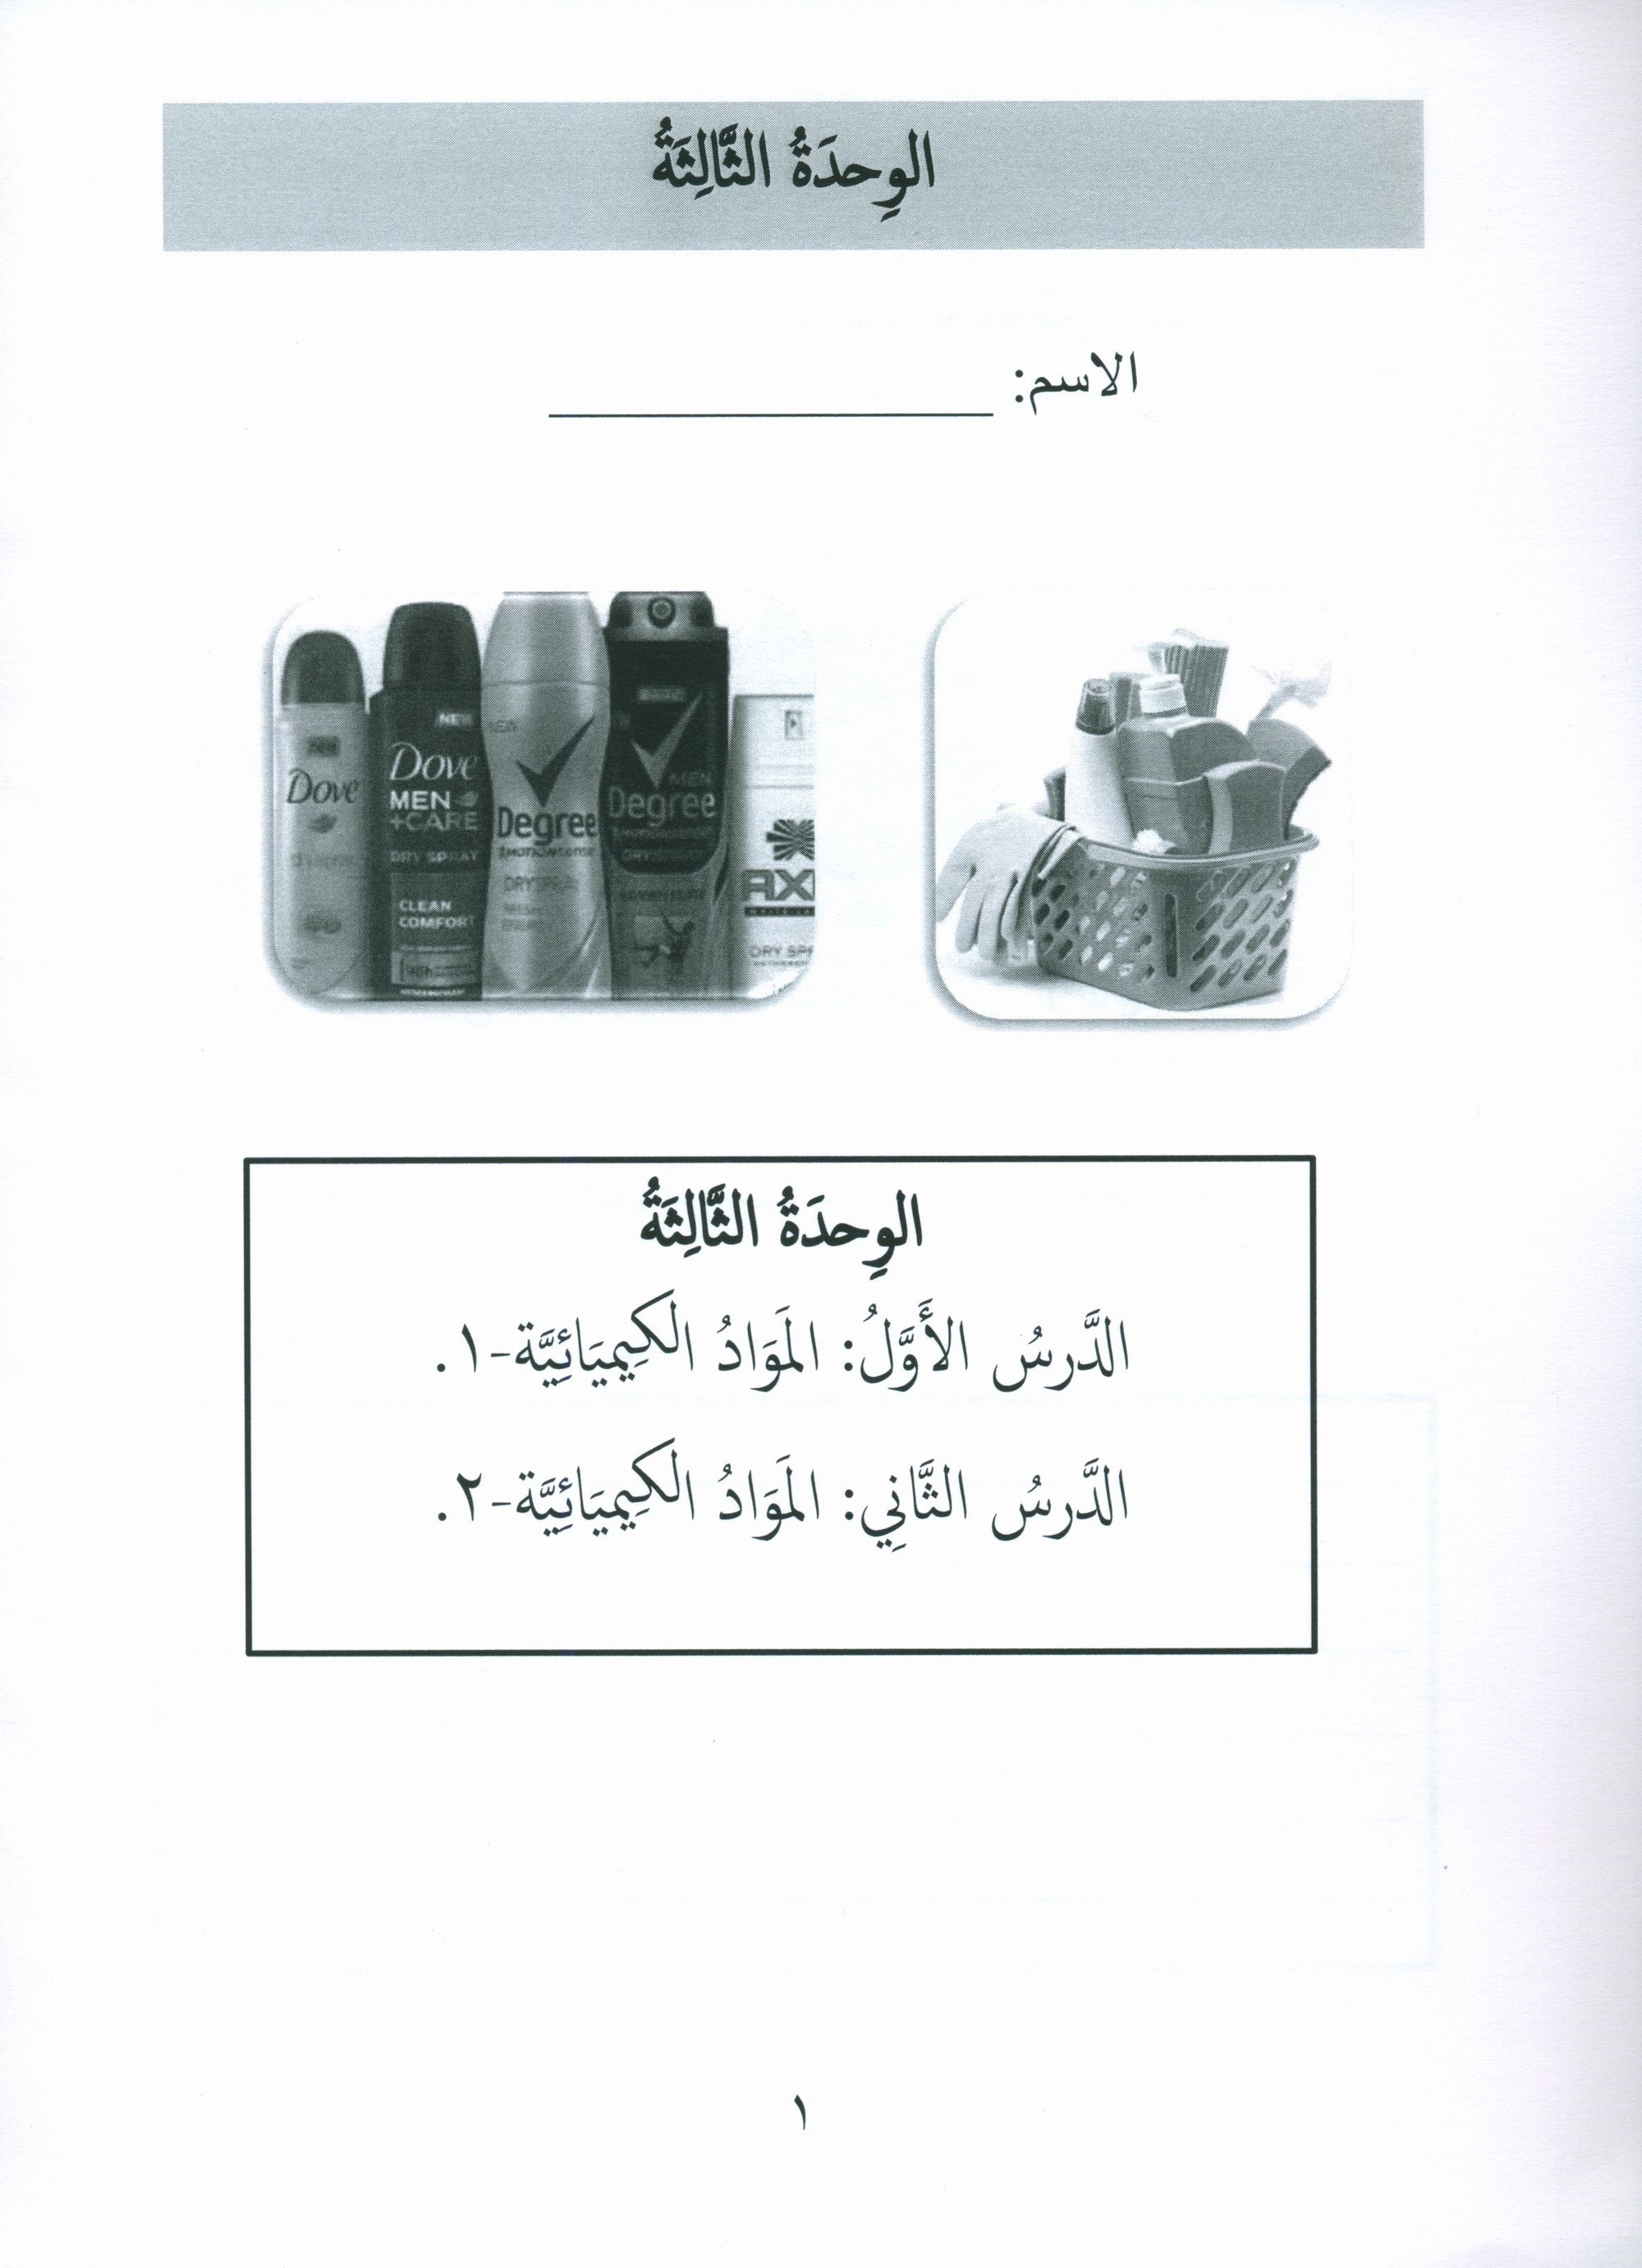 Gems of Arabic Assessment Level 8